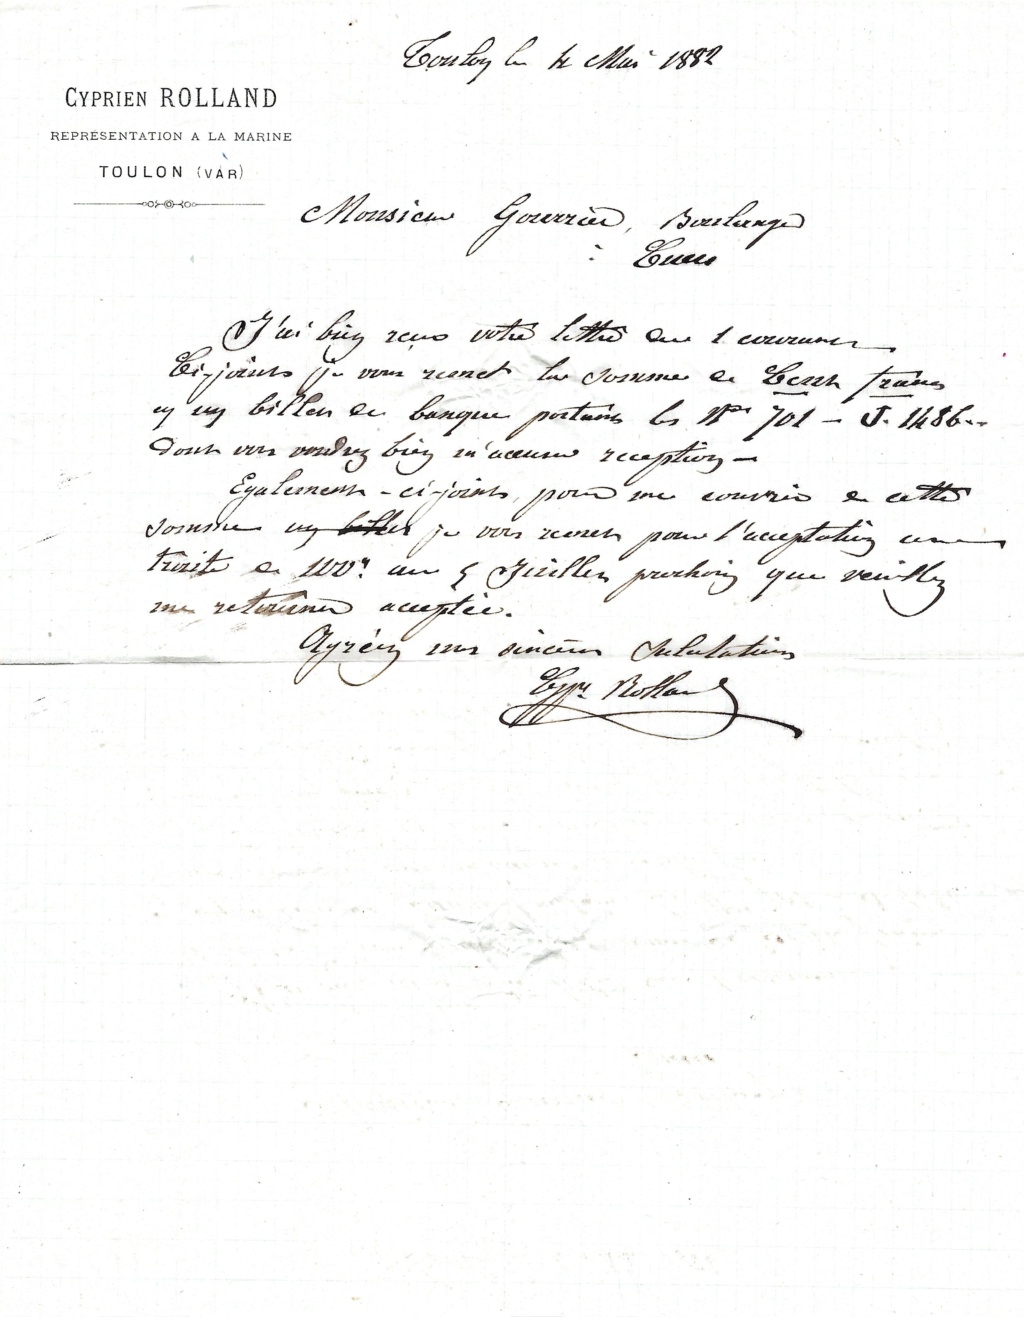 Besoin d'aide : Tarification d'une lettre chargée au 04 mai 1882 Toulon34